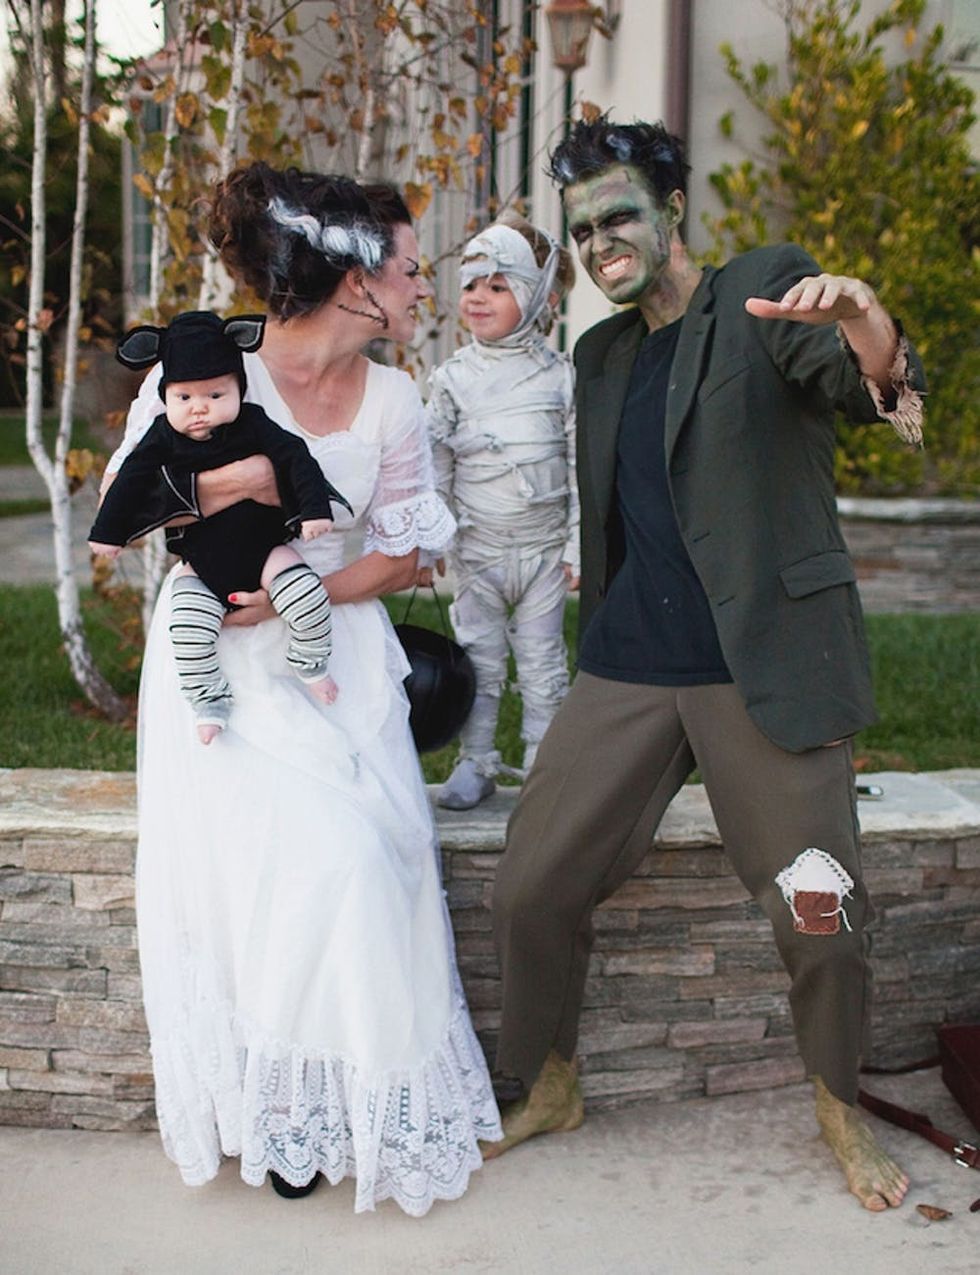 Monster Family Costumes